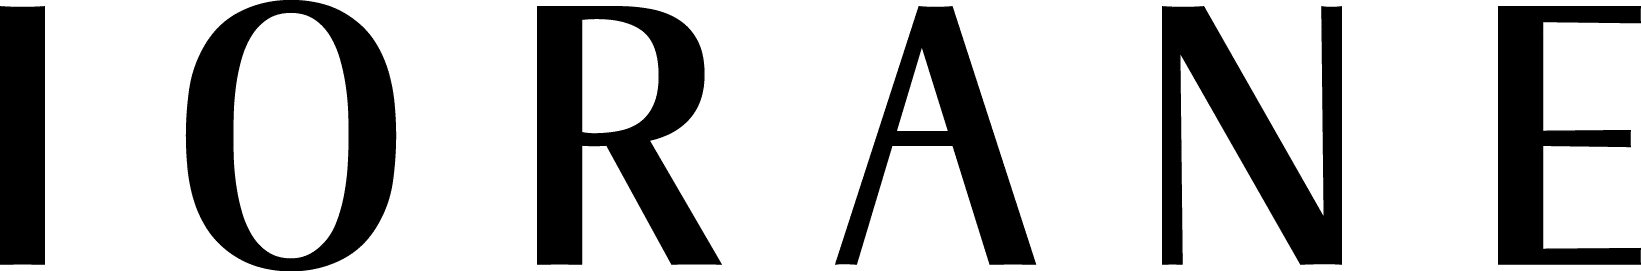 Logo-Preta